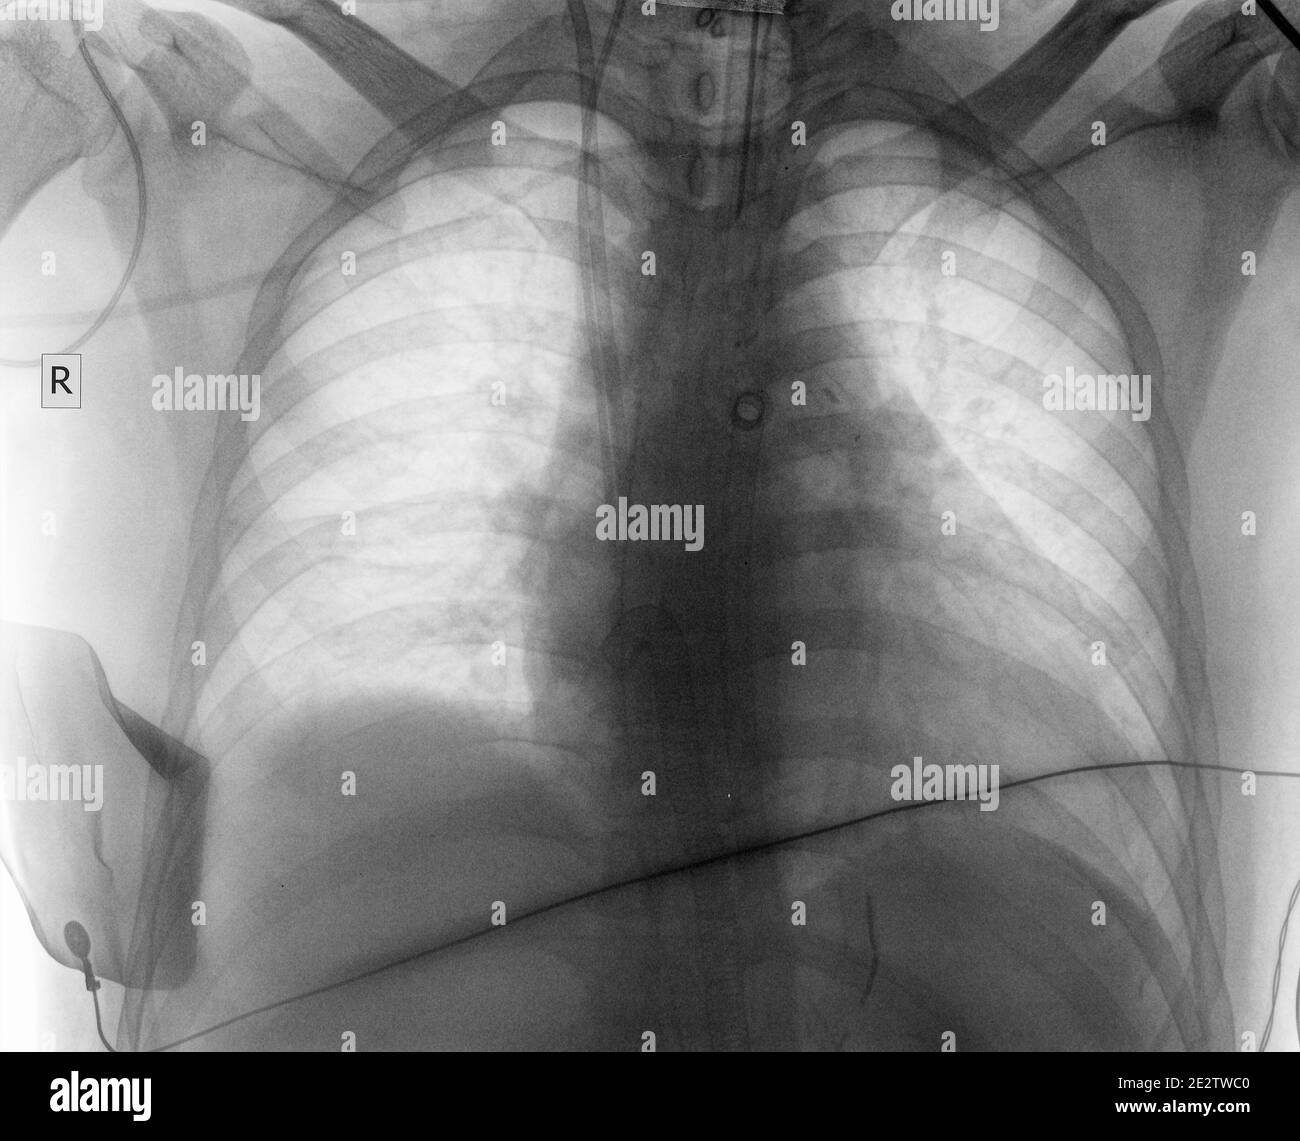 Immagine radiografica medica del paziente per il vostro background scientifico. Foto Stock